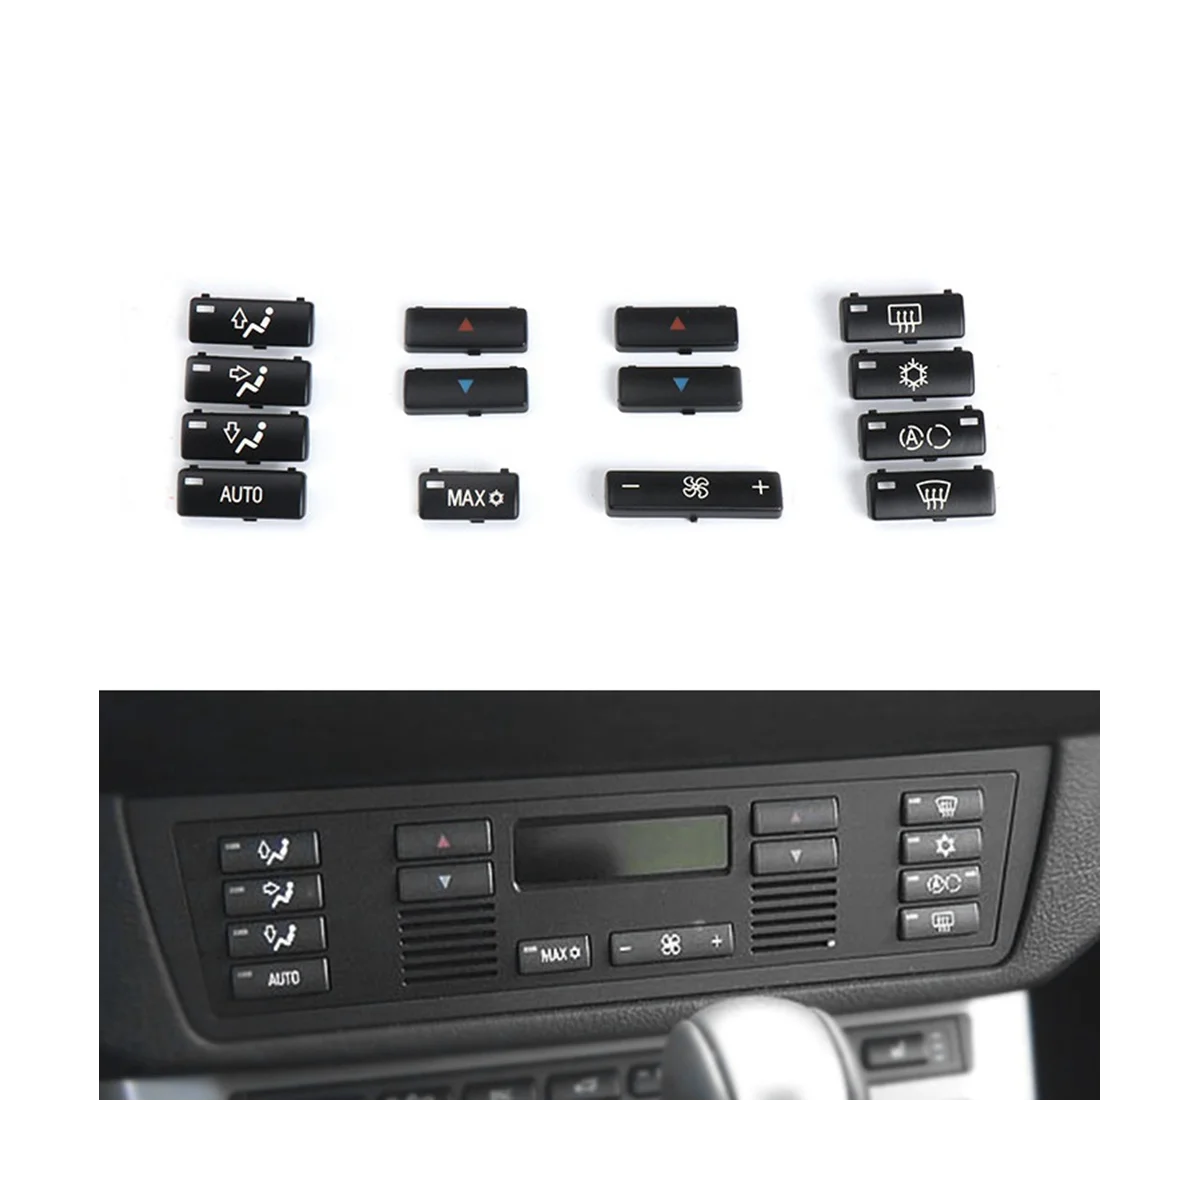 Замена колпачков для автомобильных кнопок Управления климатом, кондиционером, кнопками переключения панели управления, колпачками для BMW E39 E53 M5 X5